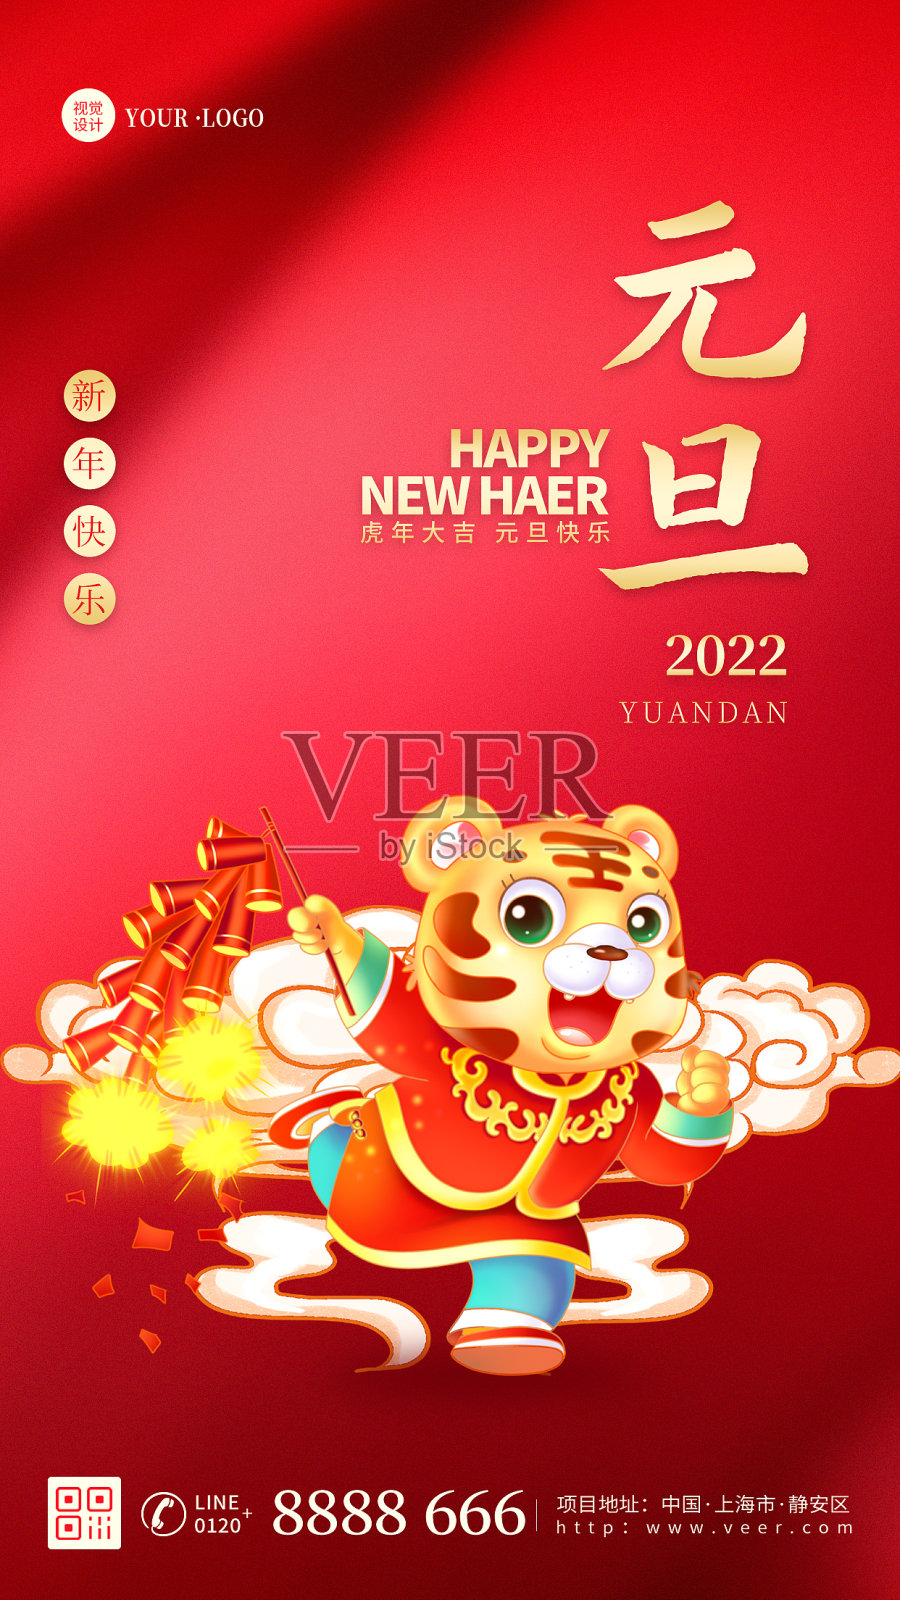 红色大气简约元旦节日新年春节祝福宣传手机海报设计模板素材